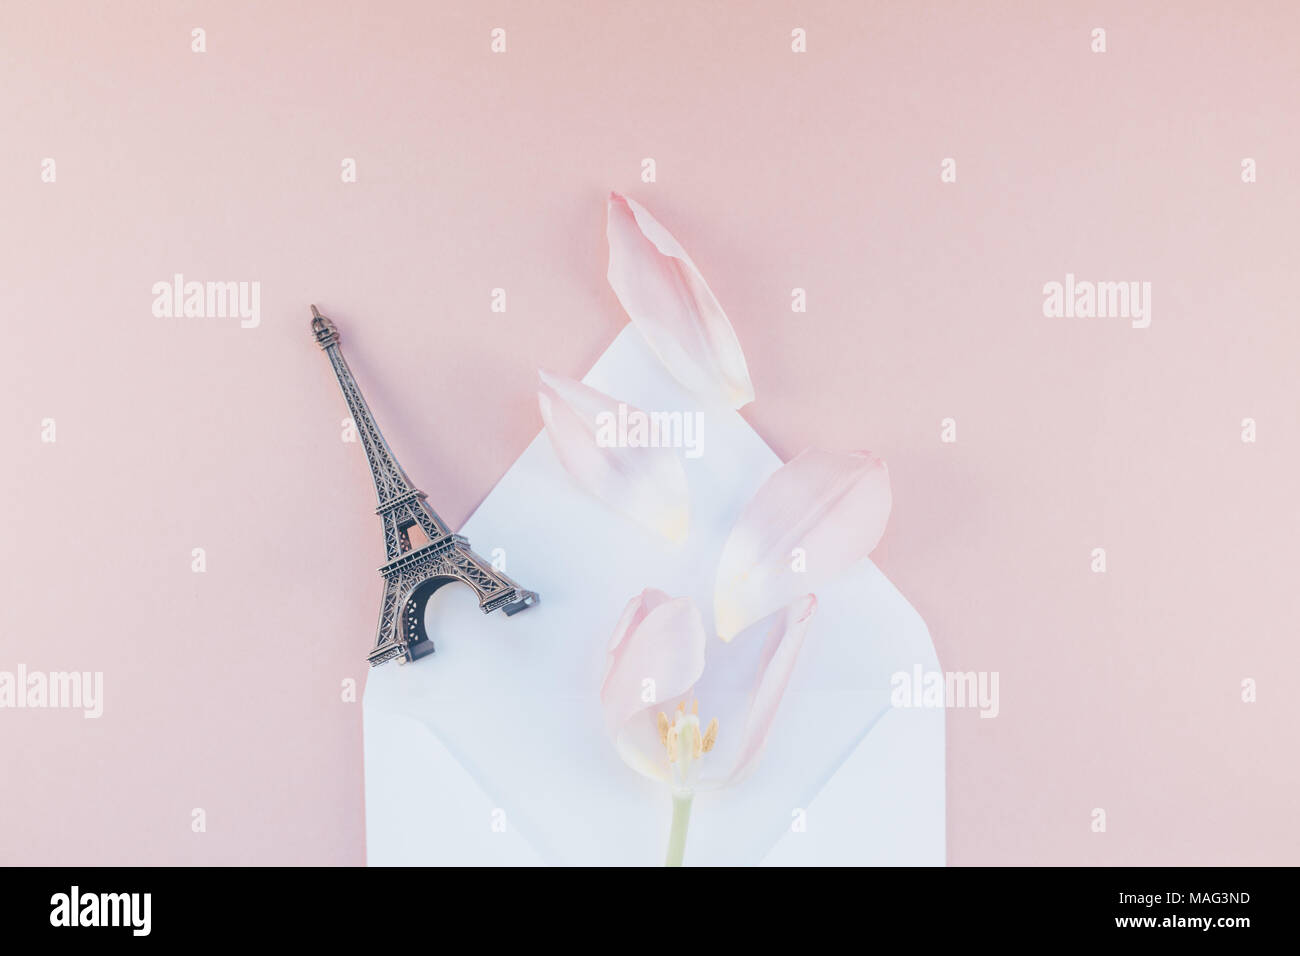 Tulipe rose avec pétales de papier enveloppe lettre ouverte avec tour Eiffel miniature sur un fond rose. Télévision jeter dessus. Souvenirs d'amour romantique con Banque D'Images